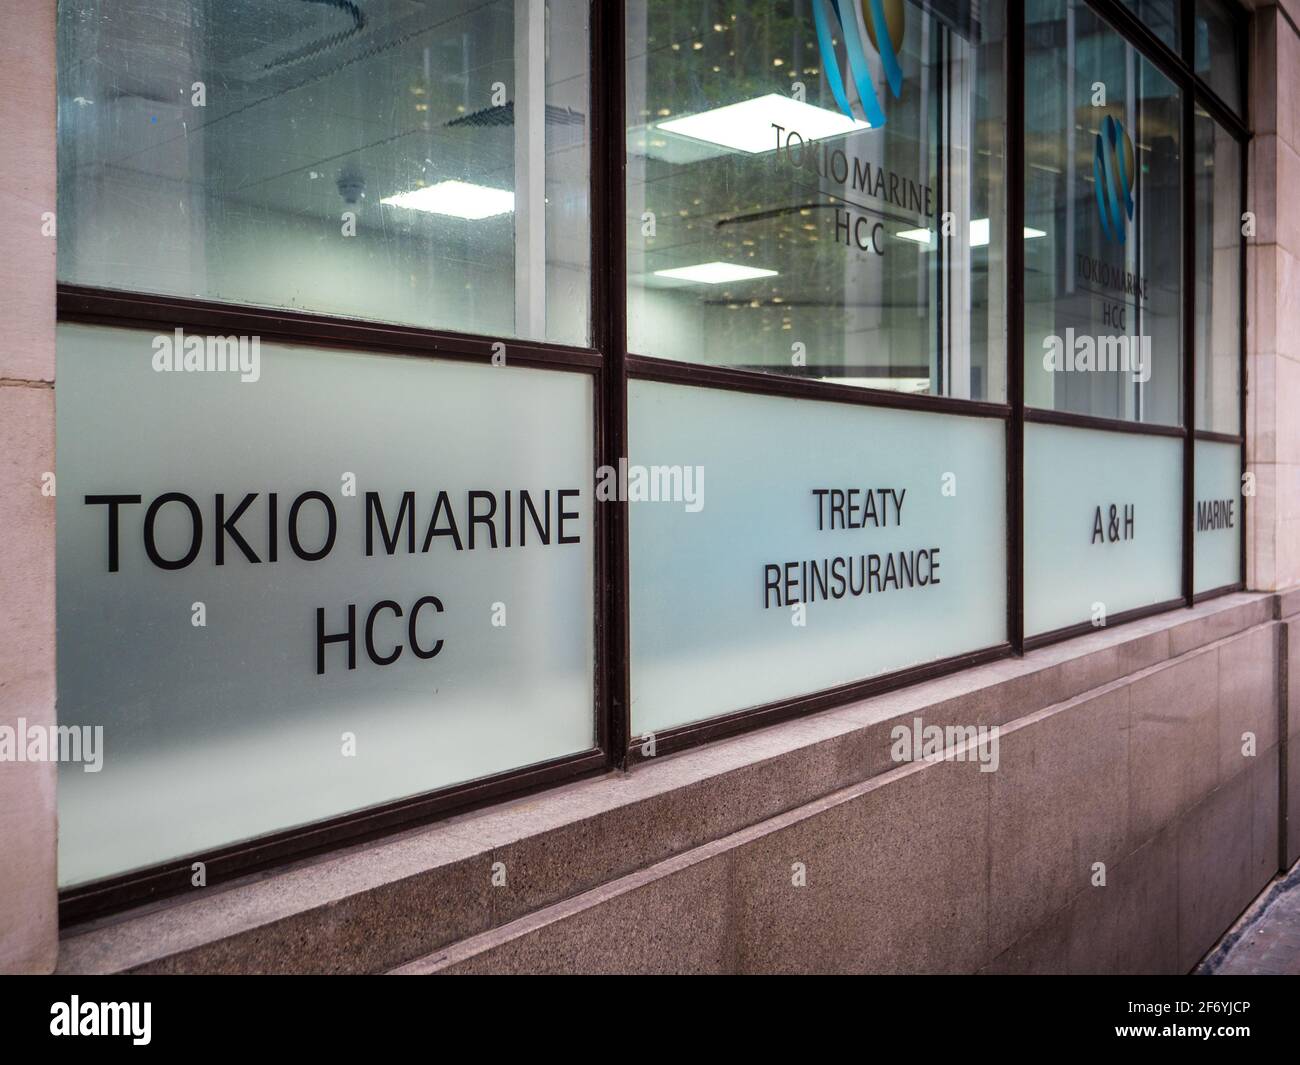 Tokio Marine HCC Insurance Company Büros im Finanzviertel der City of London. Tokio Marine HCC ist eine internationale Spezialversicherungsgruppe. Stockfoto